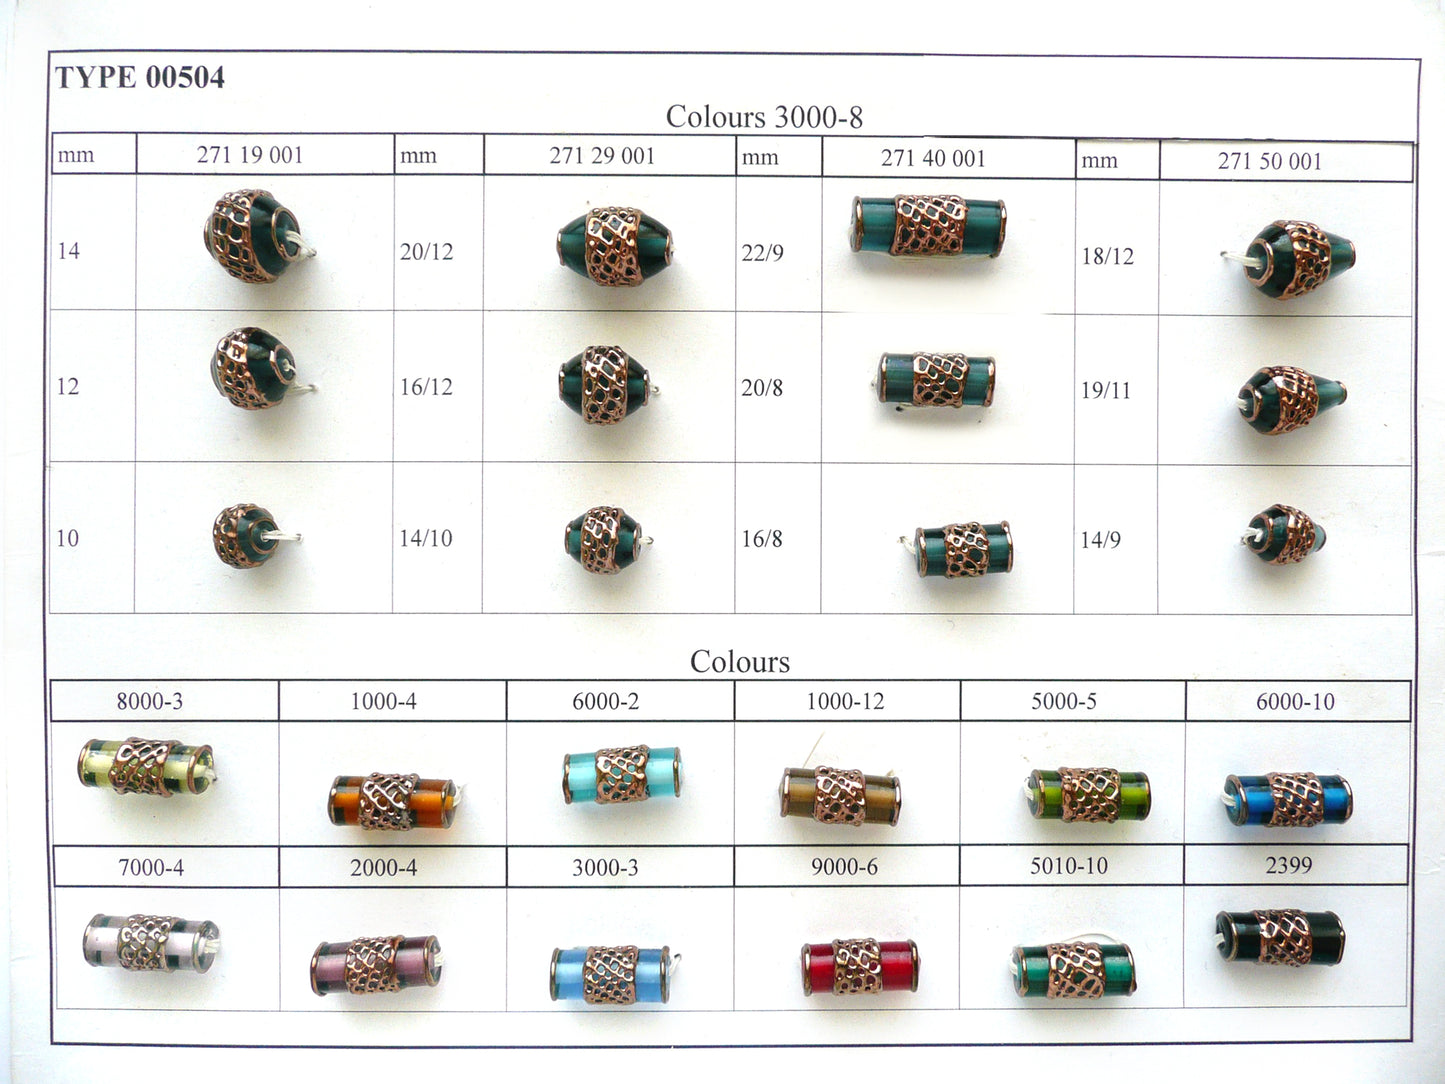 30 Stück Lampwork-Perlen 504 / Zylinder (271-40-001), handgefertigt, Preciosa-Glas, Tschechische Republik